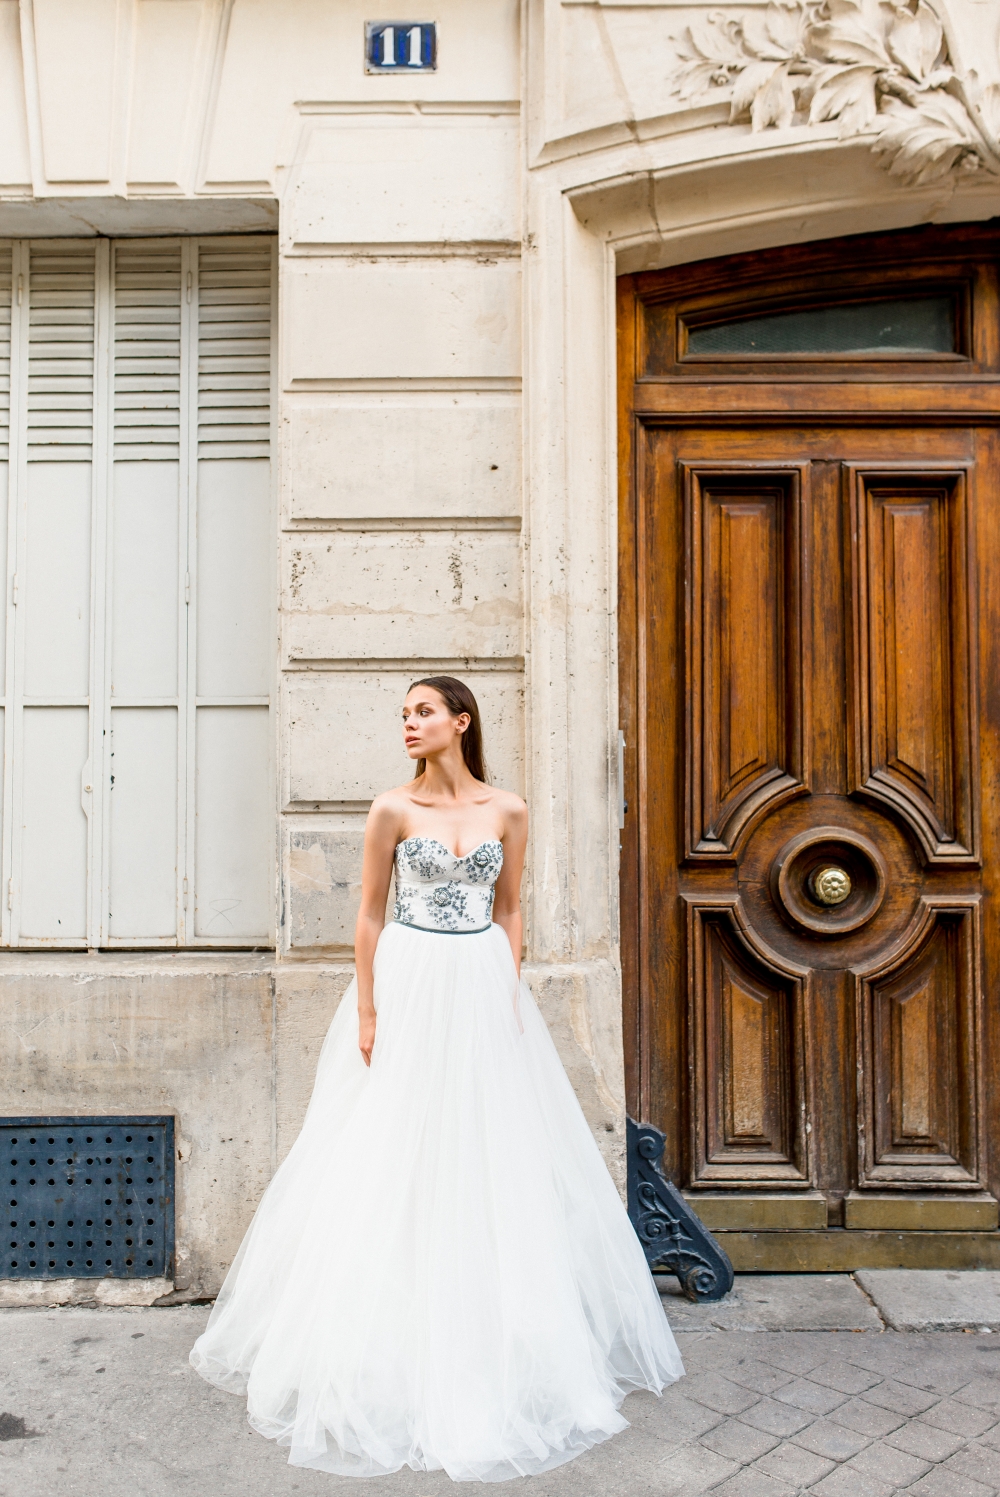 Великолепное свадебное платье-бюстье с богатой инкрустацией бисером, жемчугом и камнями в сочетании с ажурной вышивкой подчёркивает роскошное декольте.